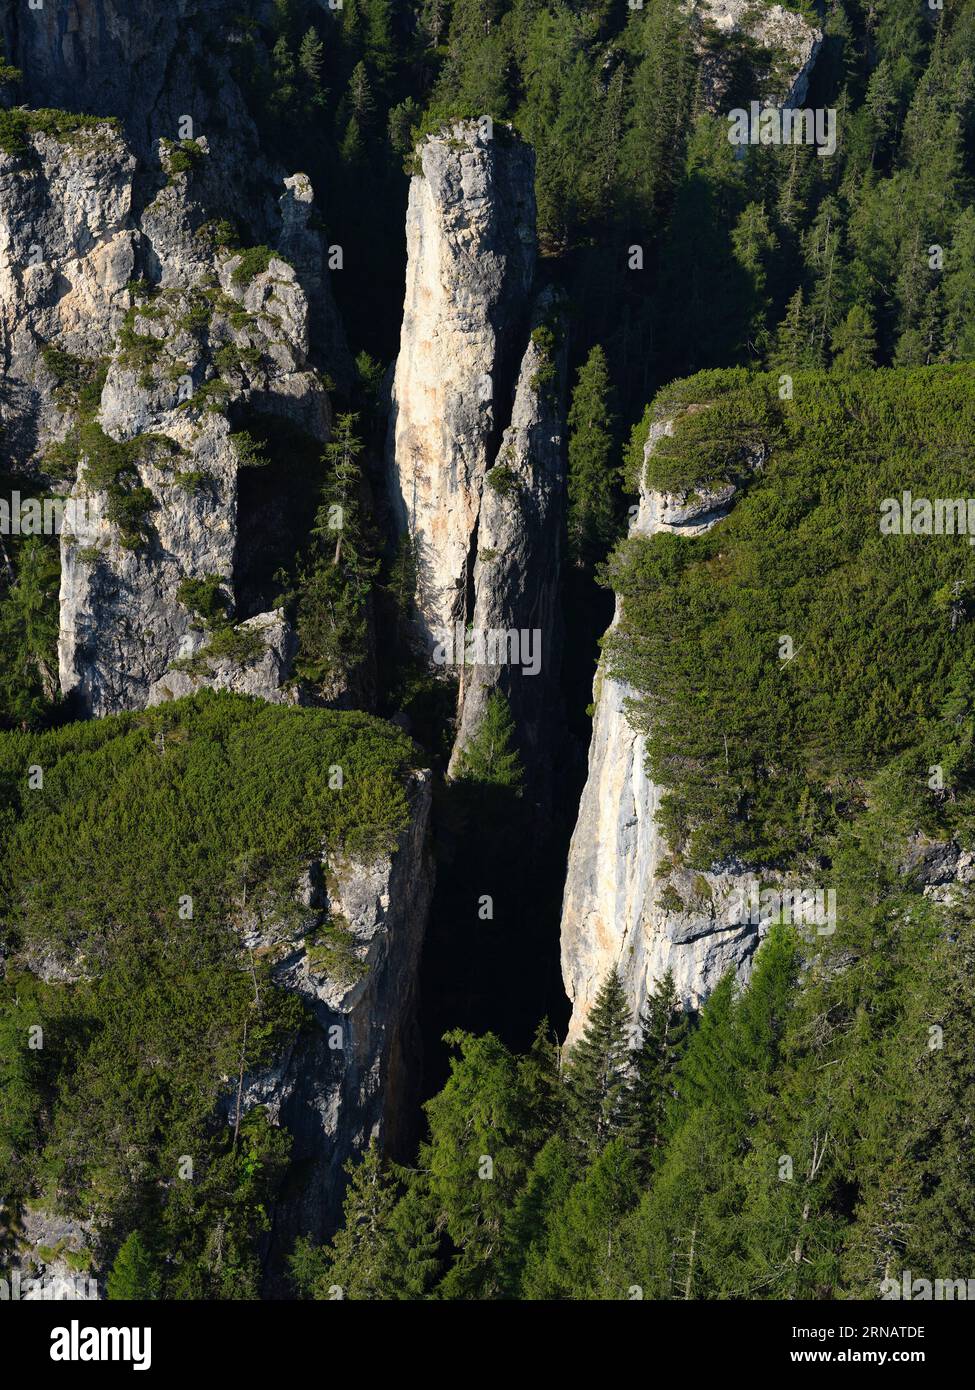 LUFTAUFNAHME. Becco d'Ajal ist eine geologische Neugier und ein bekannter Ort für Klettertouren in der Nähe von Cortina d'Ampezzo. Provinz Belluno, Venetien, Italien. Stockfoto